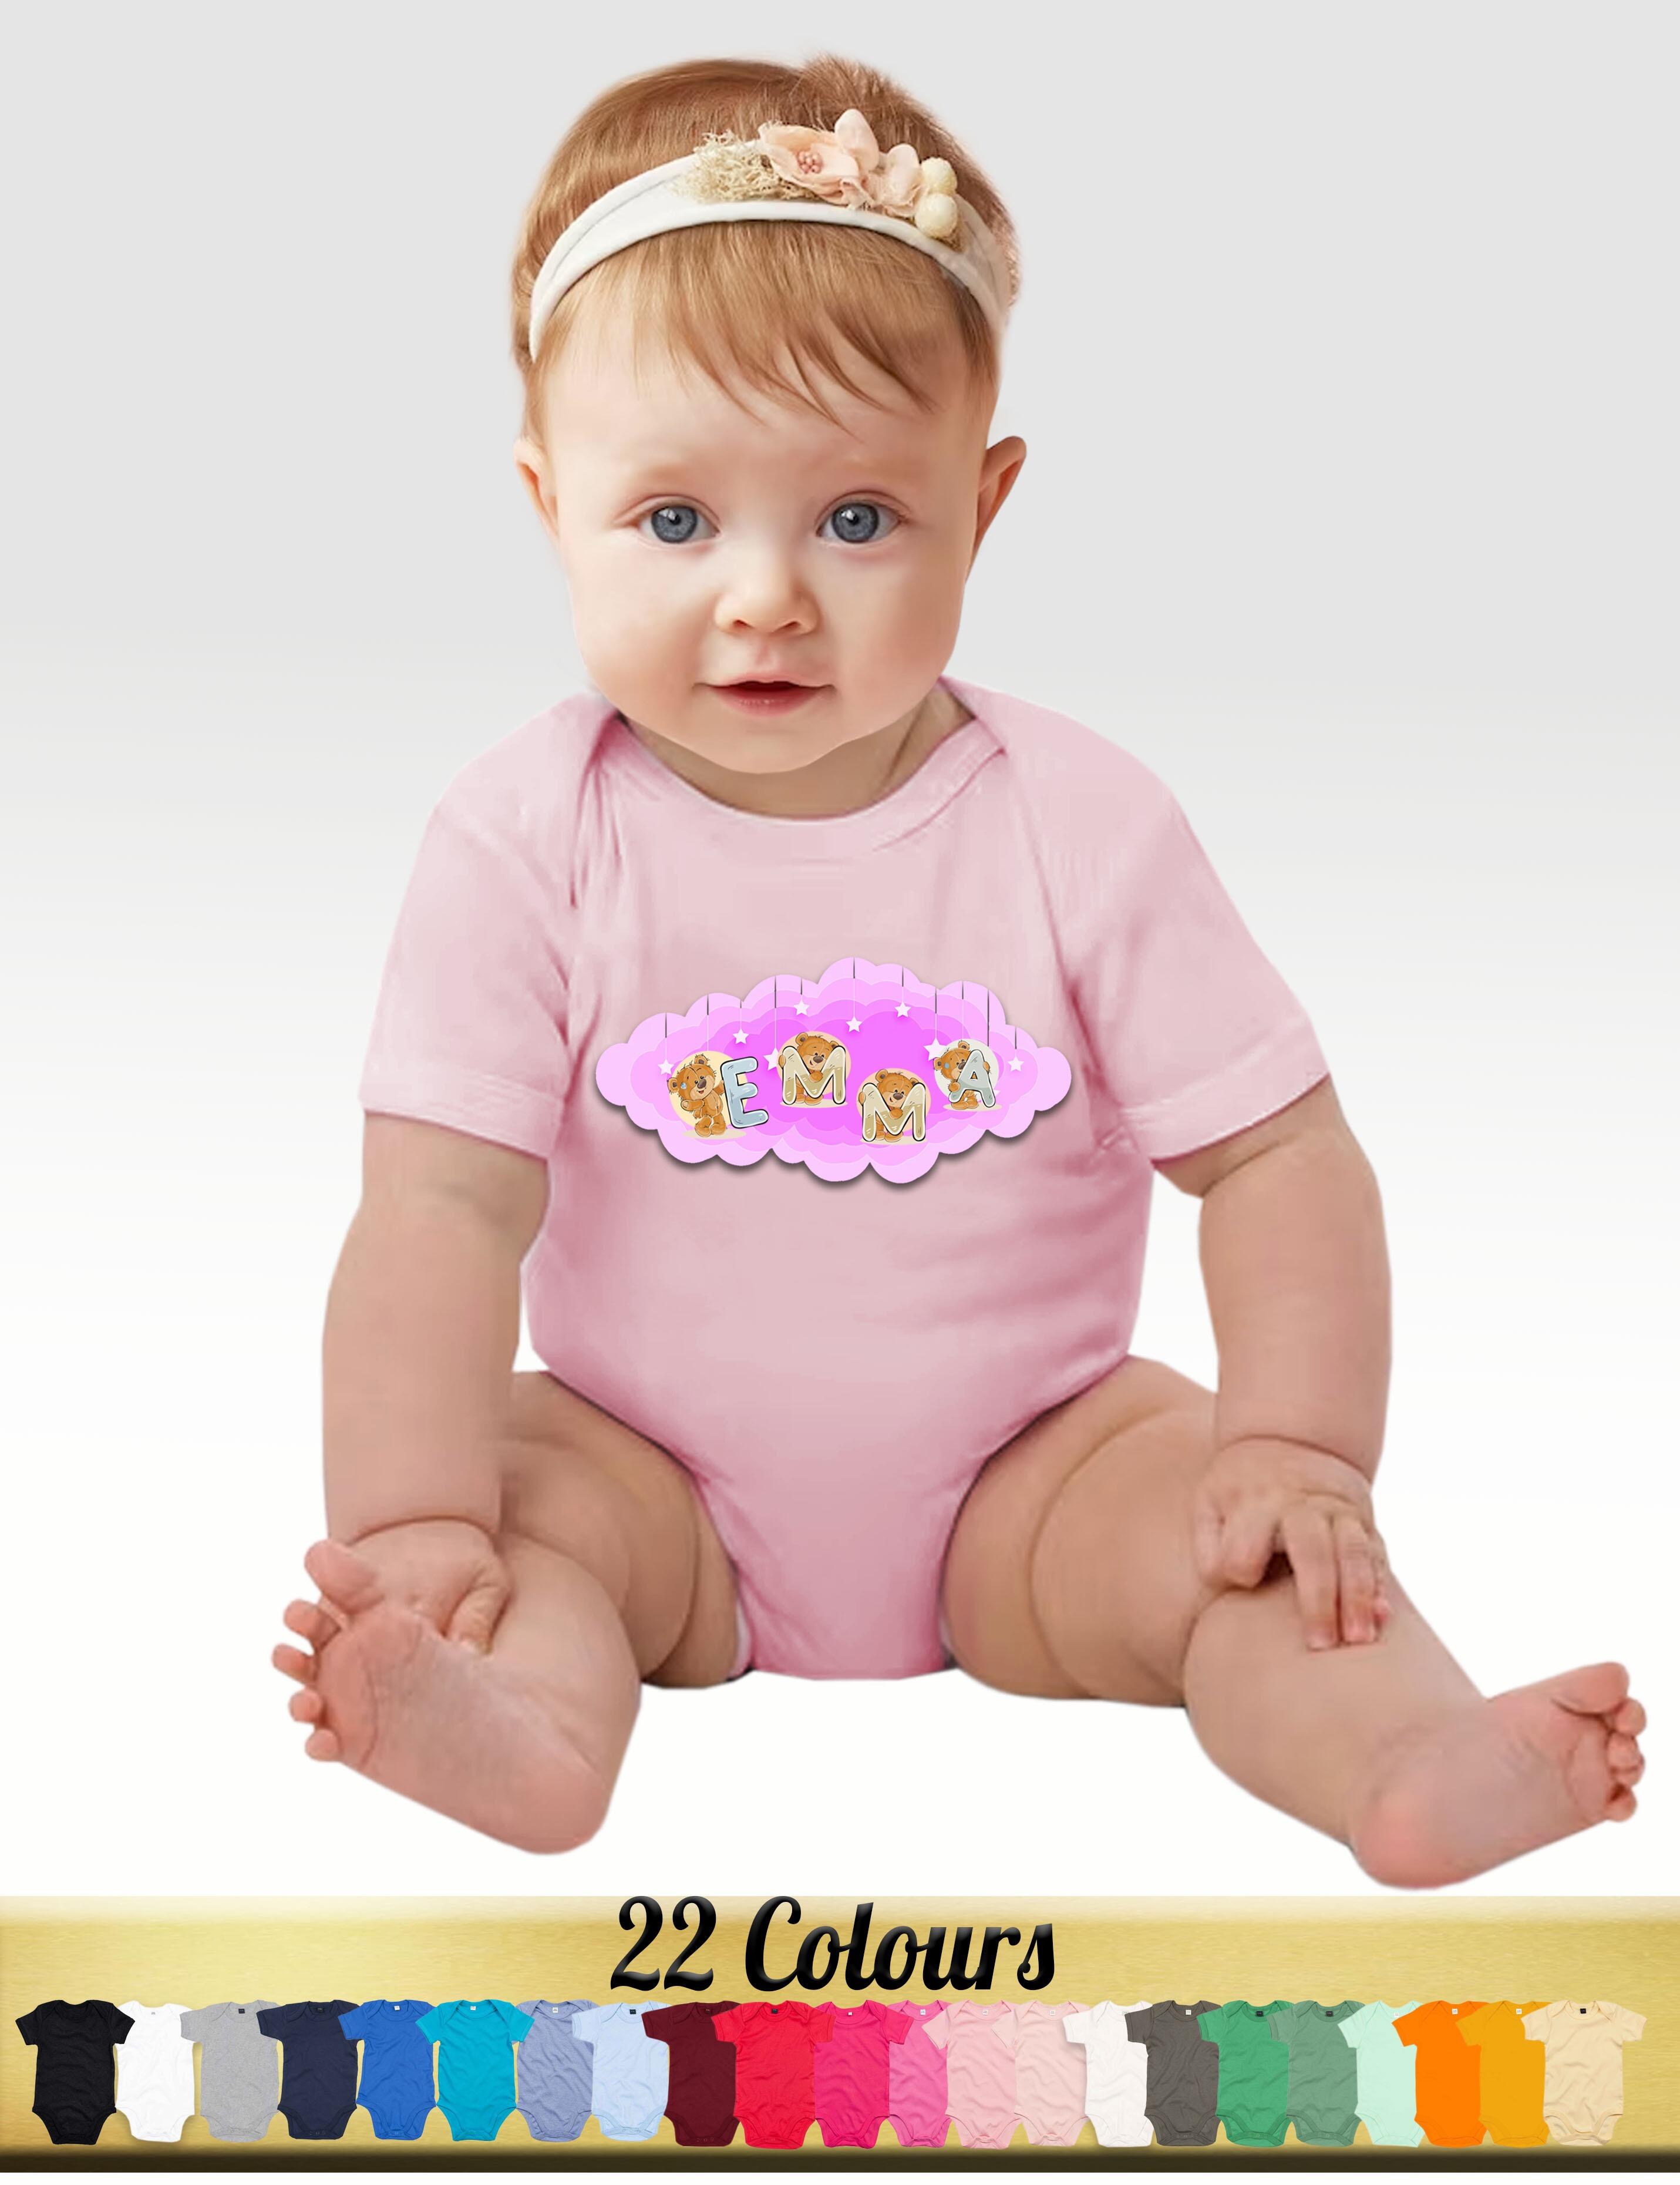 Personalised Girlie Short Sleeve Baby Bodysuit